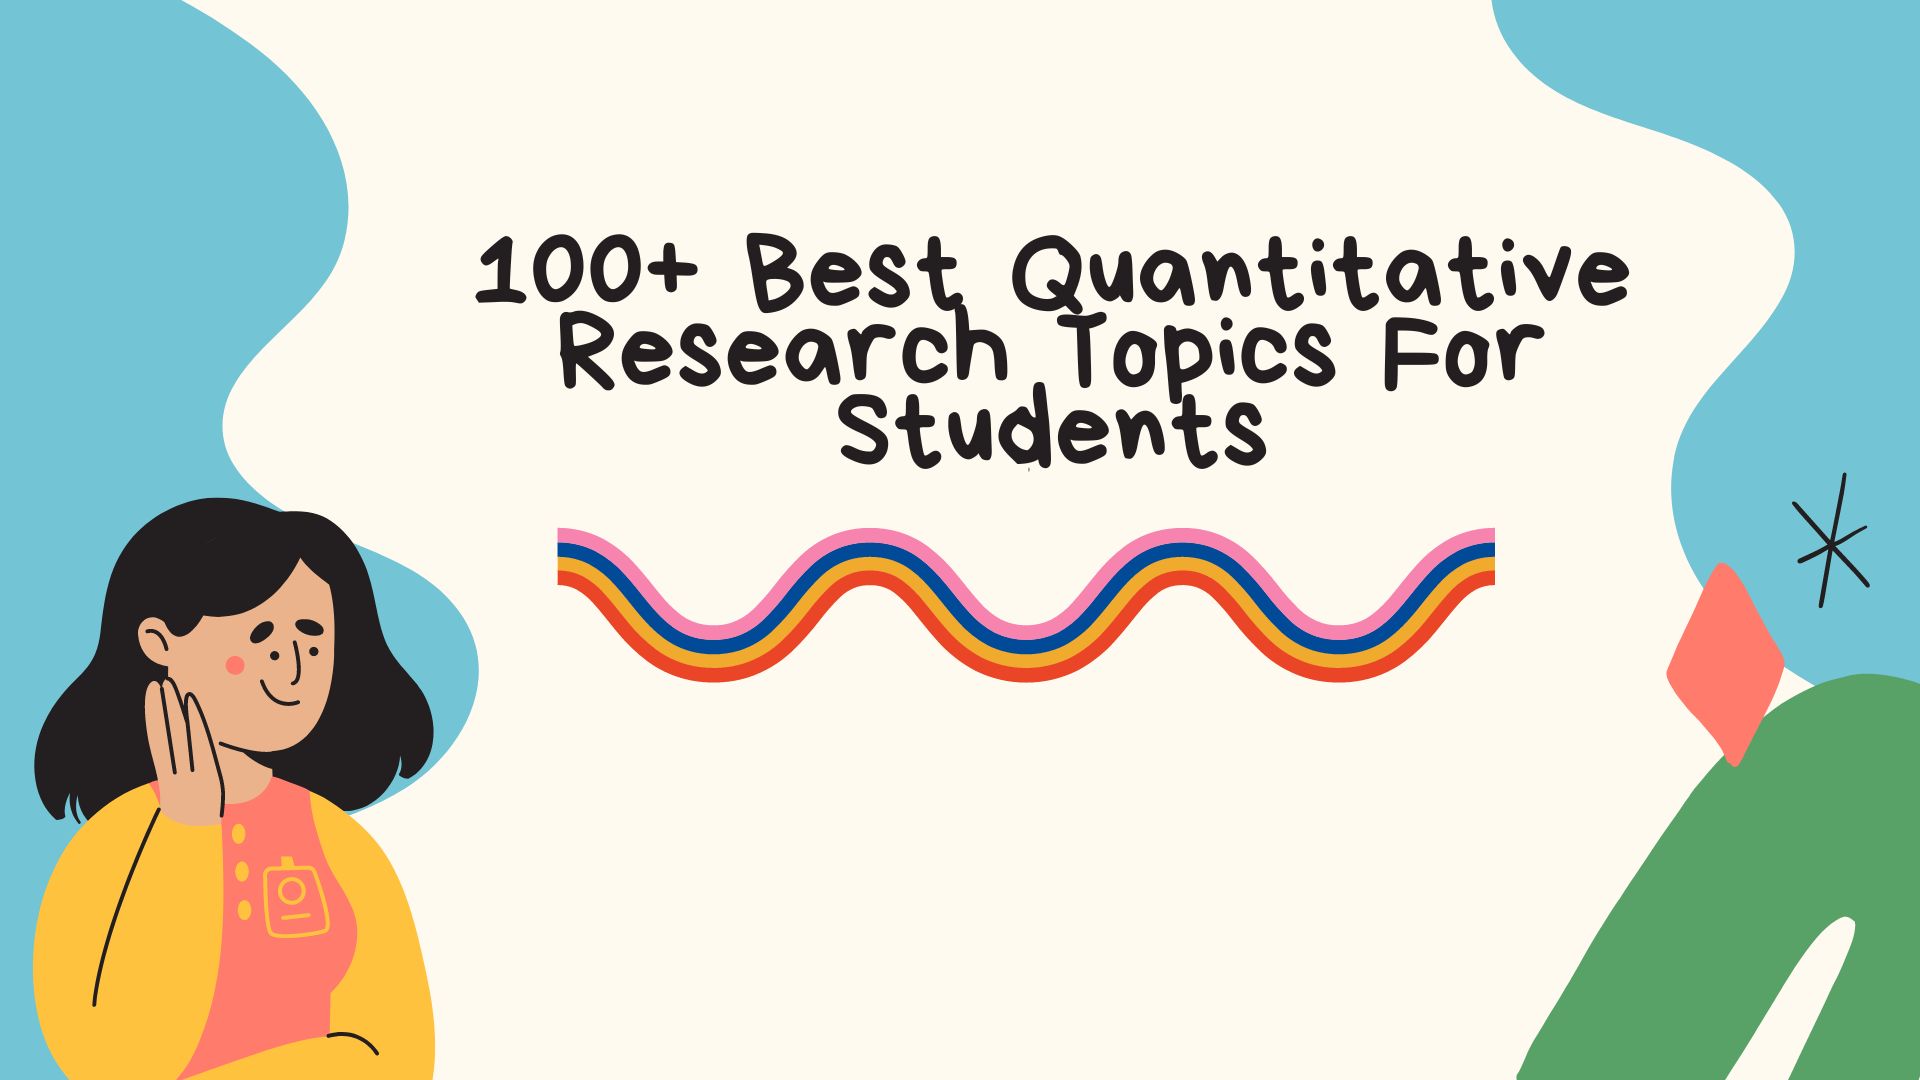 quantitative marketing research topics